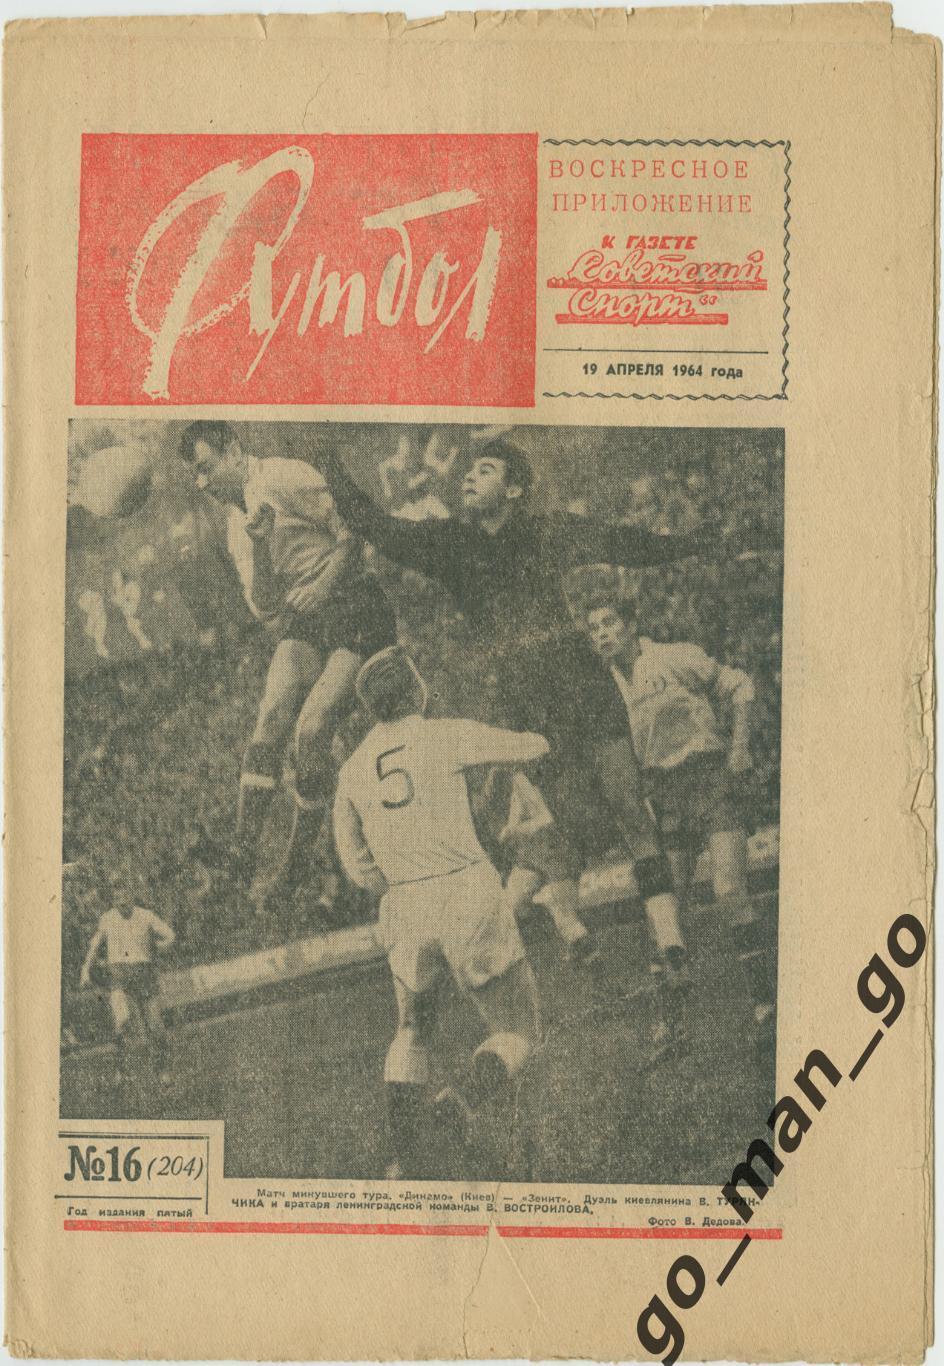 Еженедельник Футбол 1964, № 16.